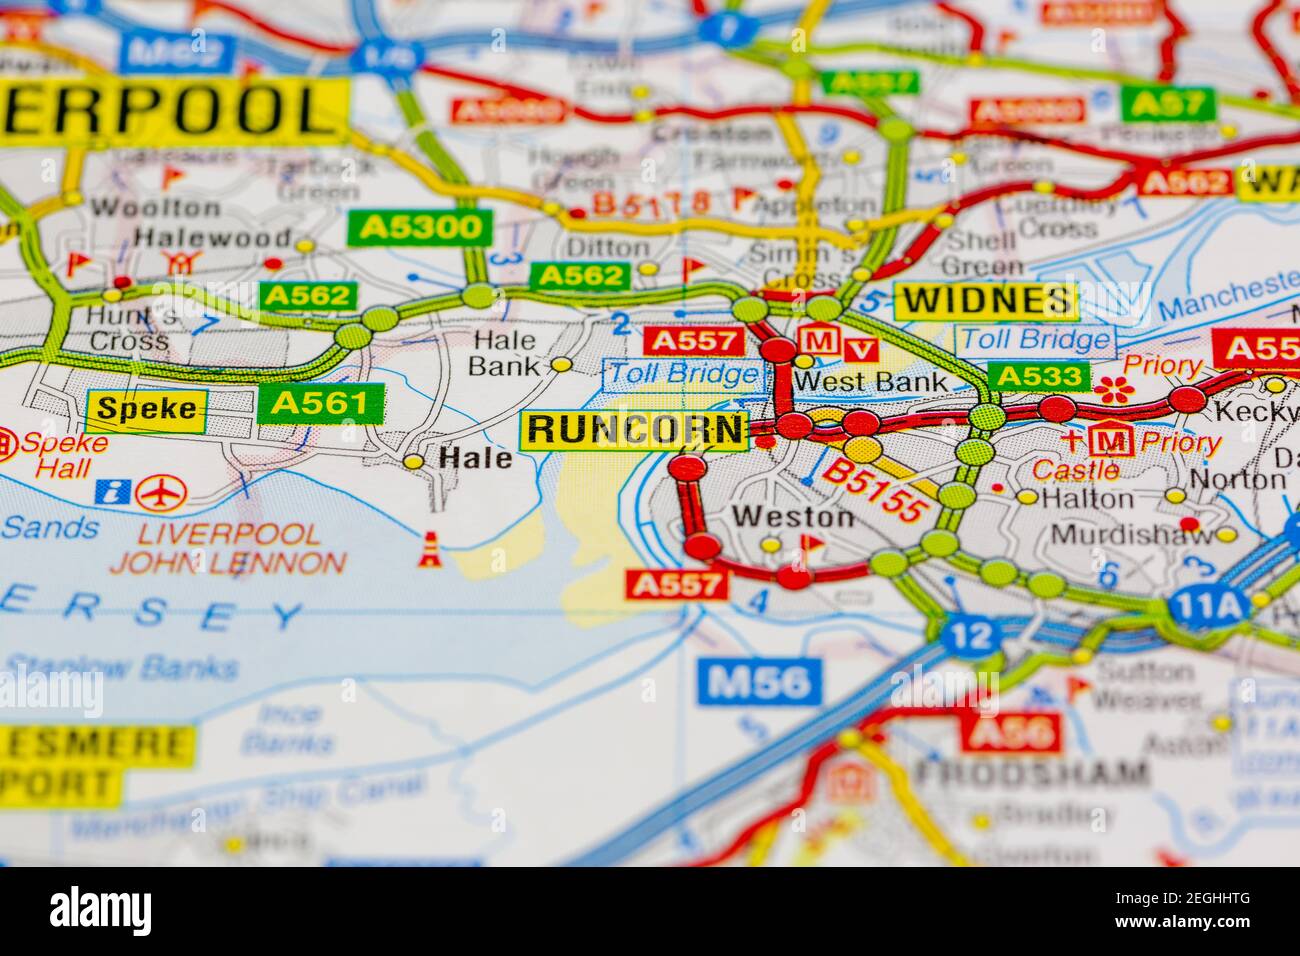 runcorn et les zones environnantes affichées sur une carte routière ou carte géographique Banque D'Images